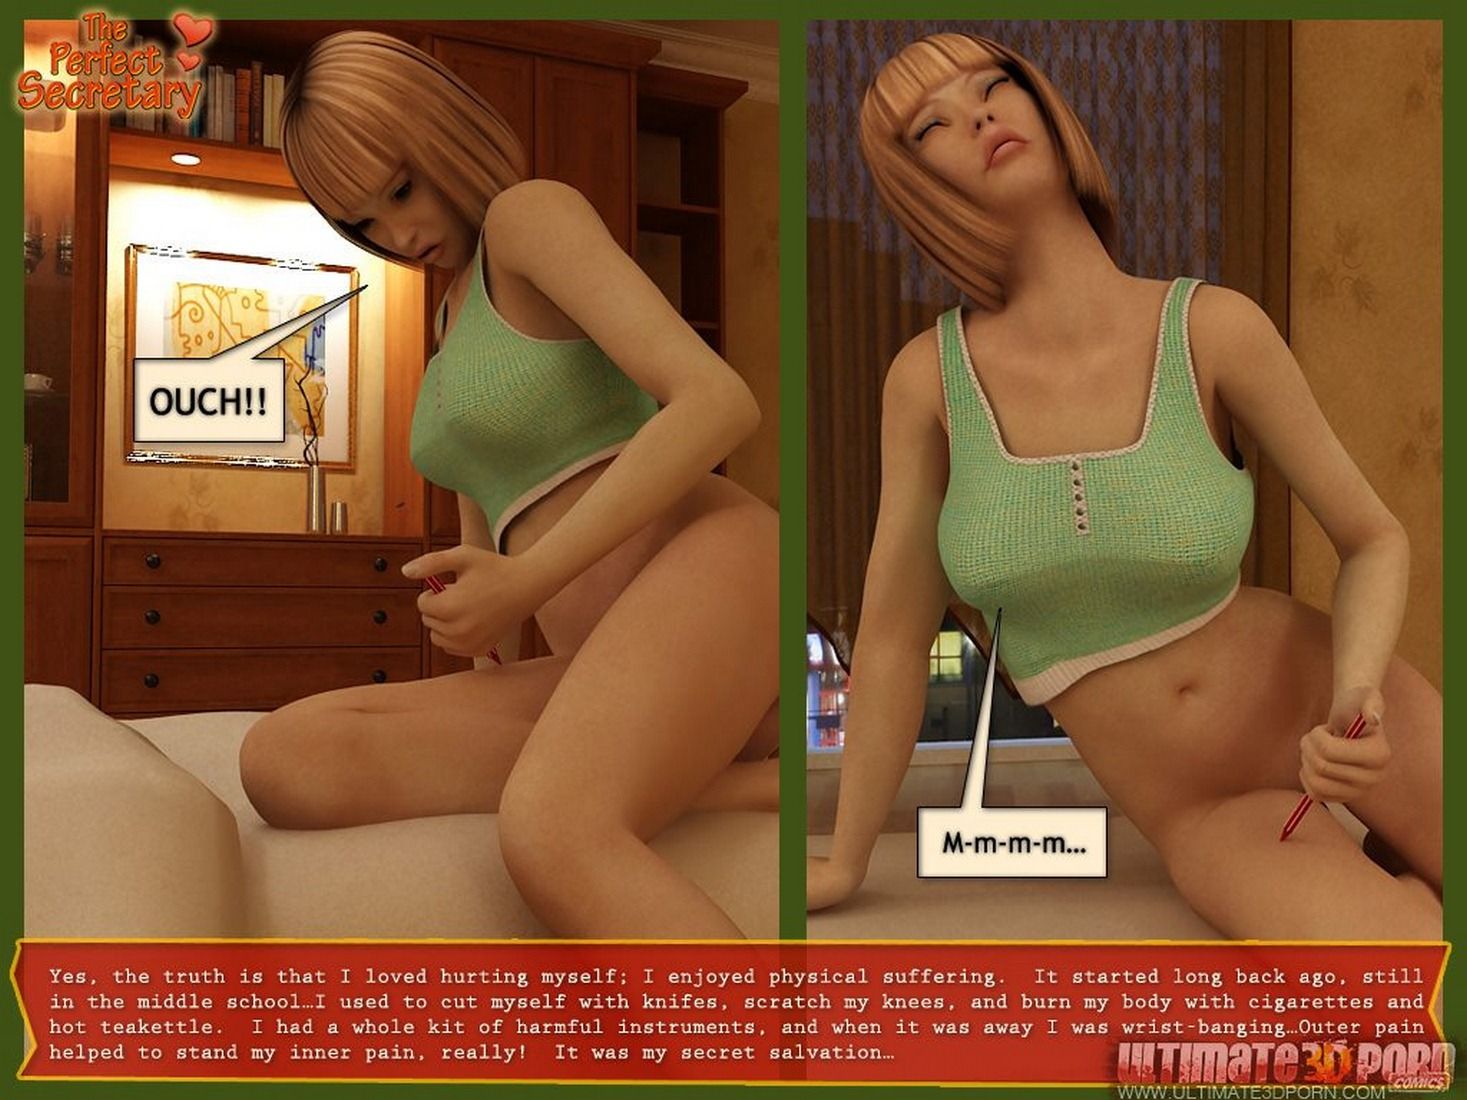 1467px x 1100px - Ultimate 3D Sexual Comics-The Good Secretary | Porn Comics